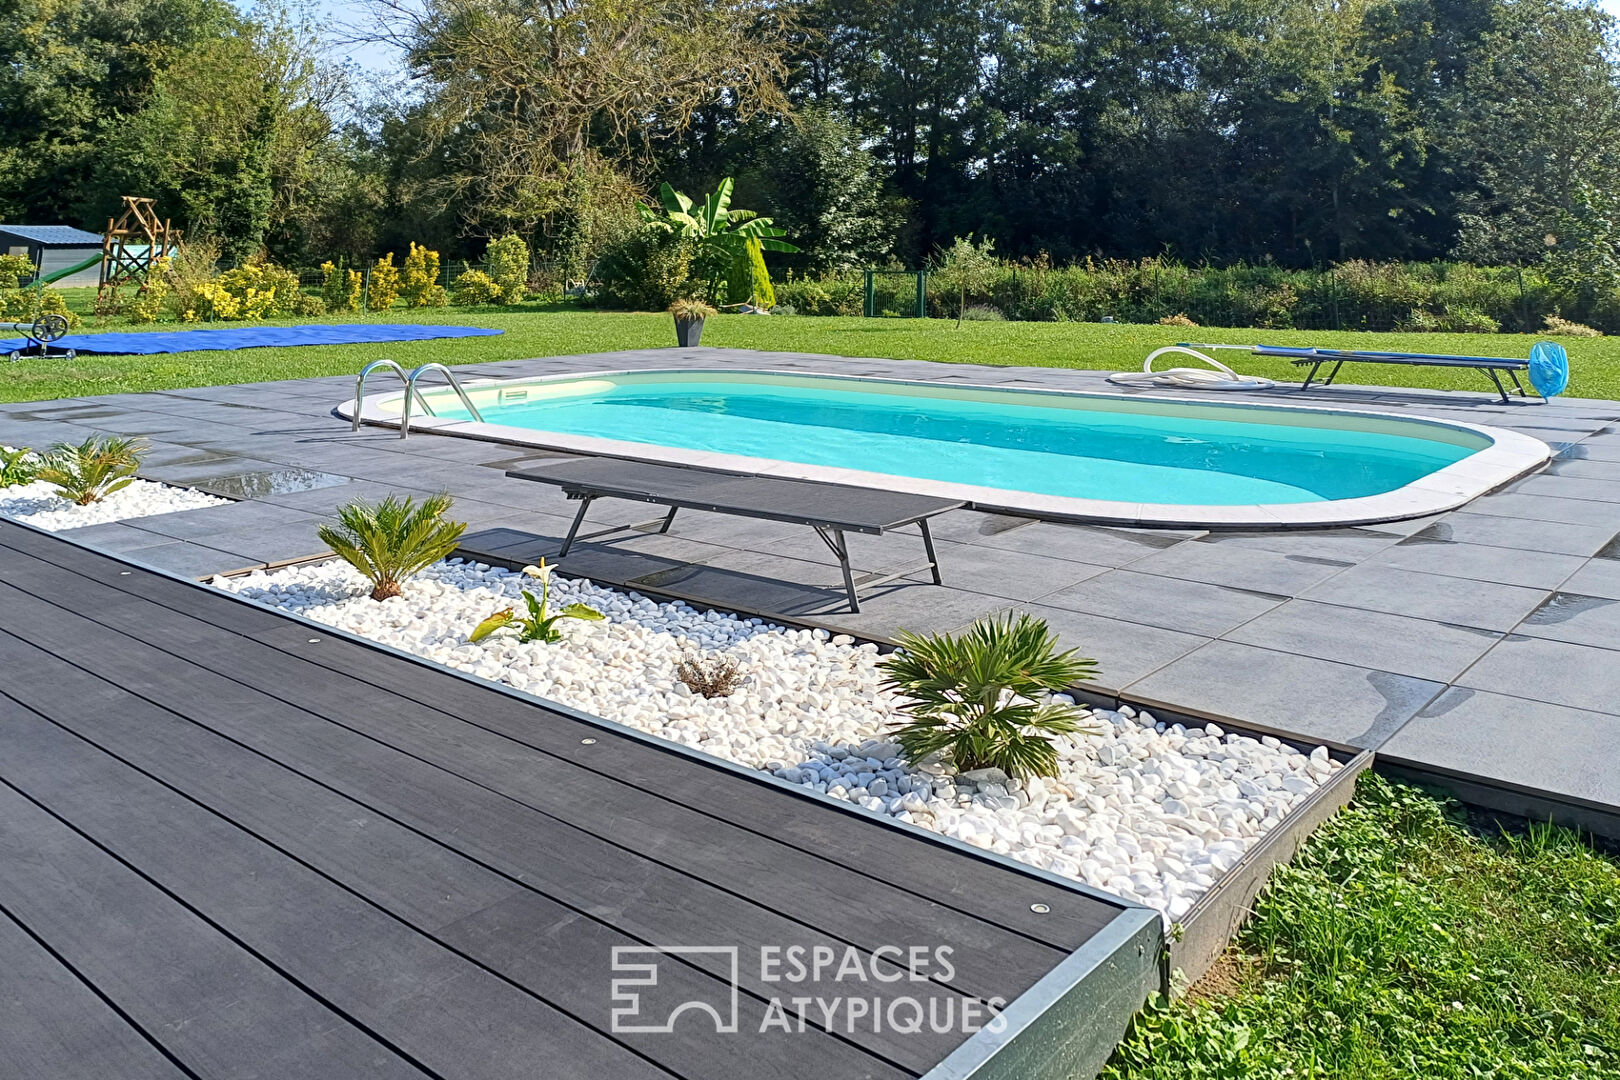 Maison contemporaine avec piscine chauffée et jardin bucolique – Agglomération de la Baie de Somme